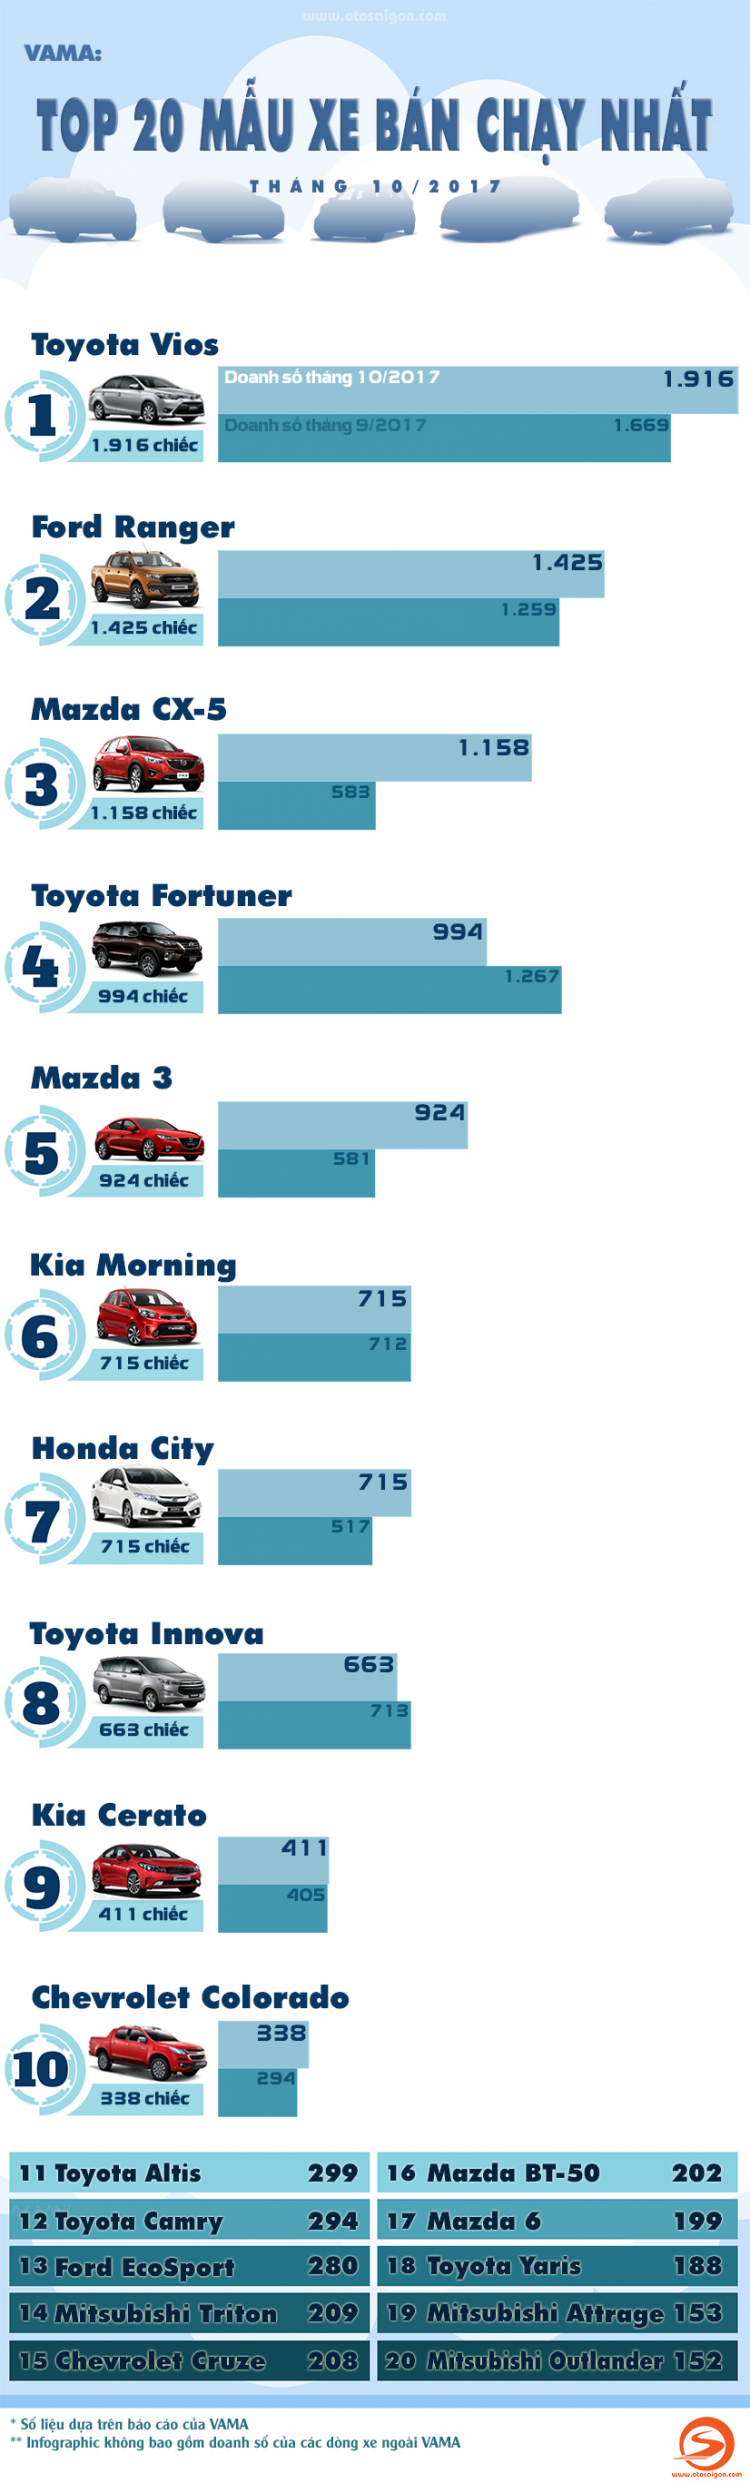 [INFOGRAPHIC] Top 20 xe bán chạy nhất tháng 10/2017